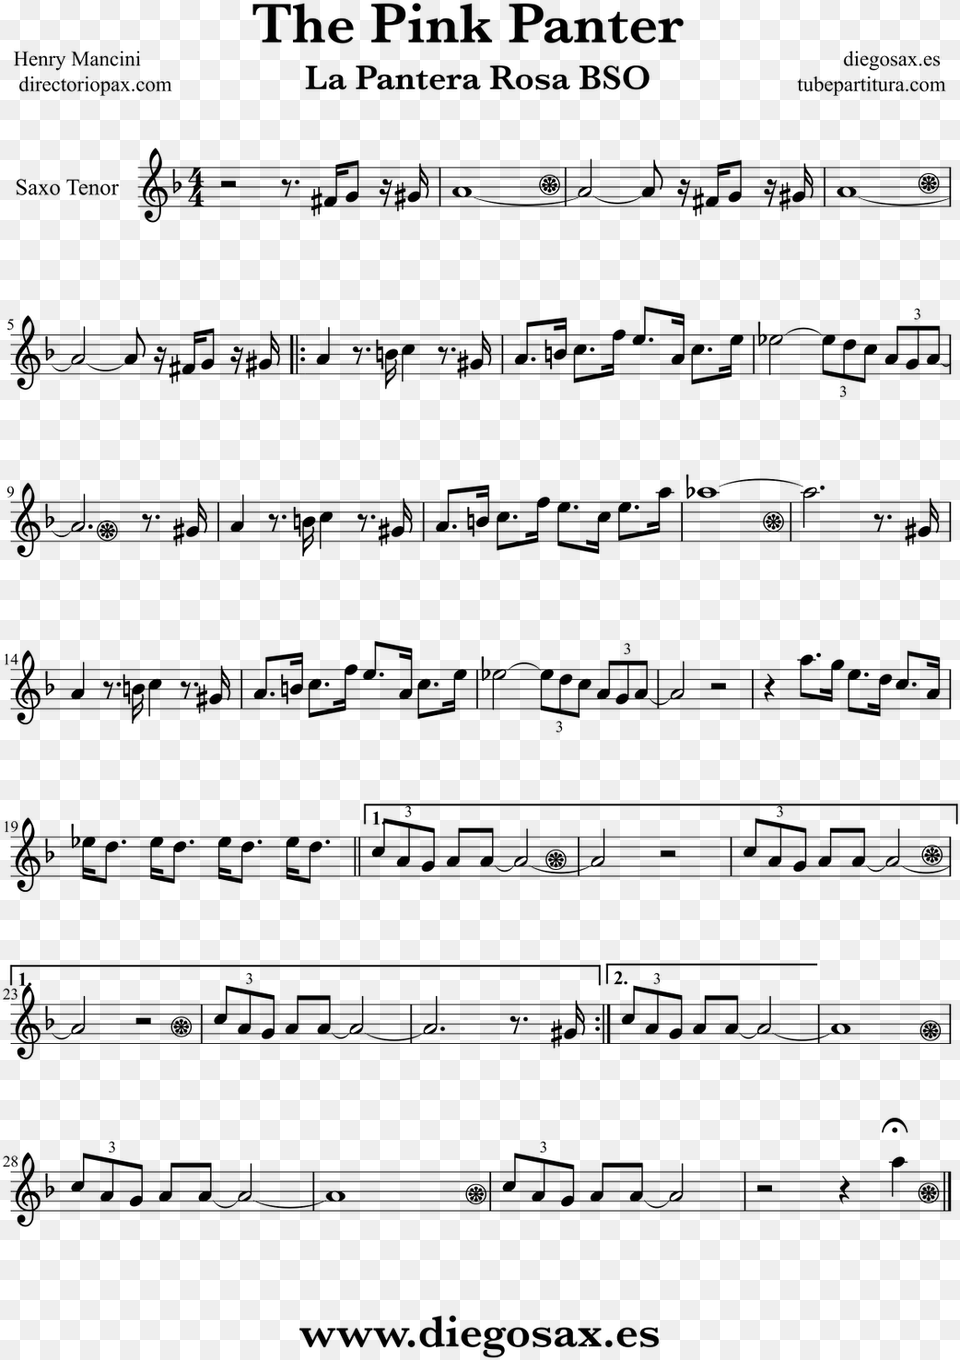 Partitura De La Pantera Rosa Para Saxofn Tenor Henry Partitura De La Pantera Rosa, Gray Free Png Download